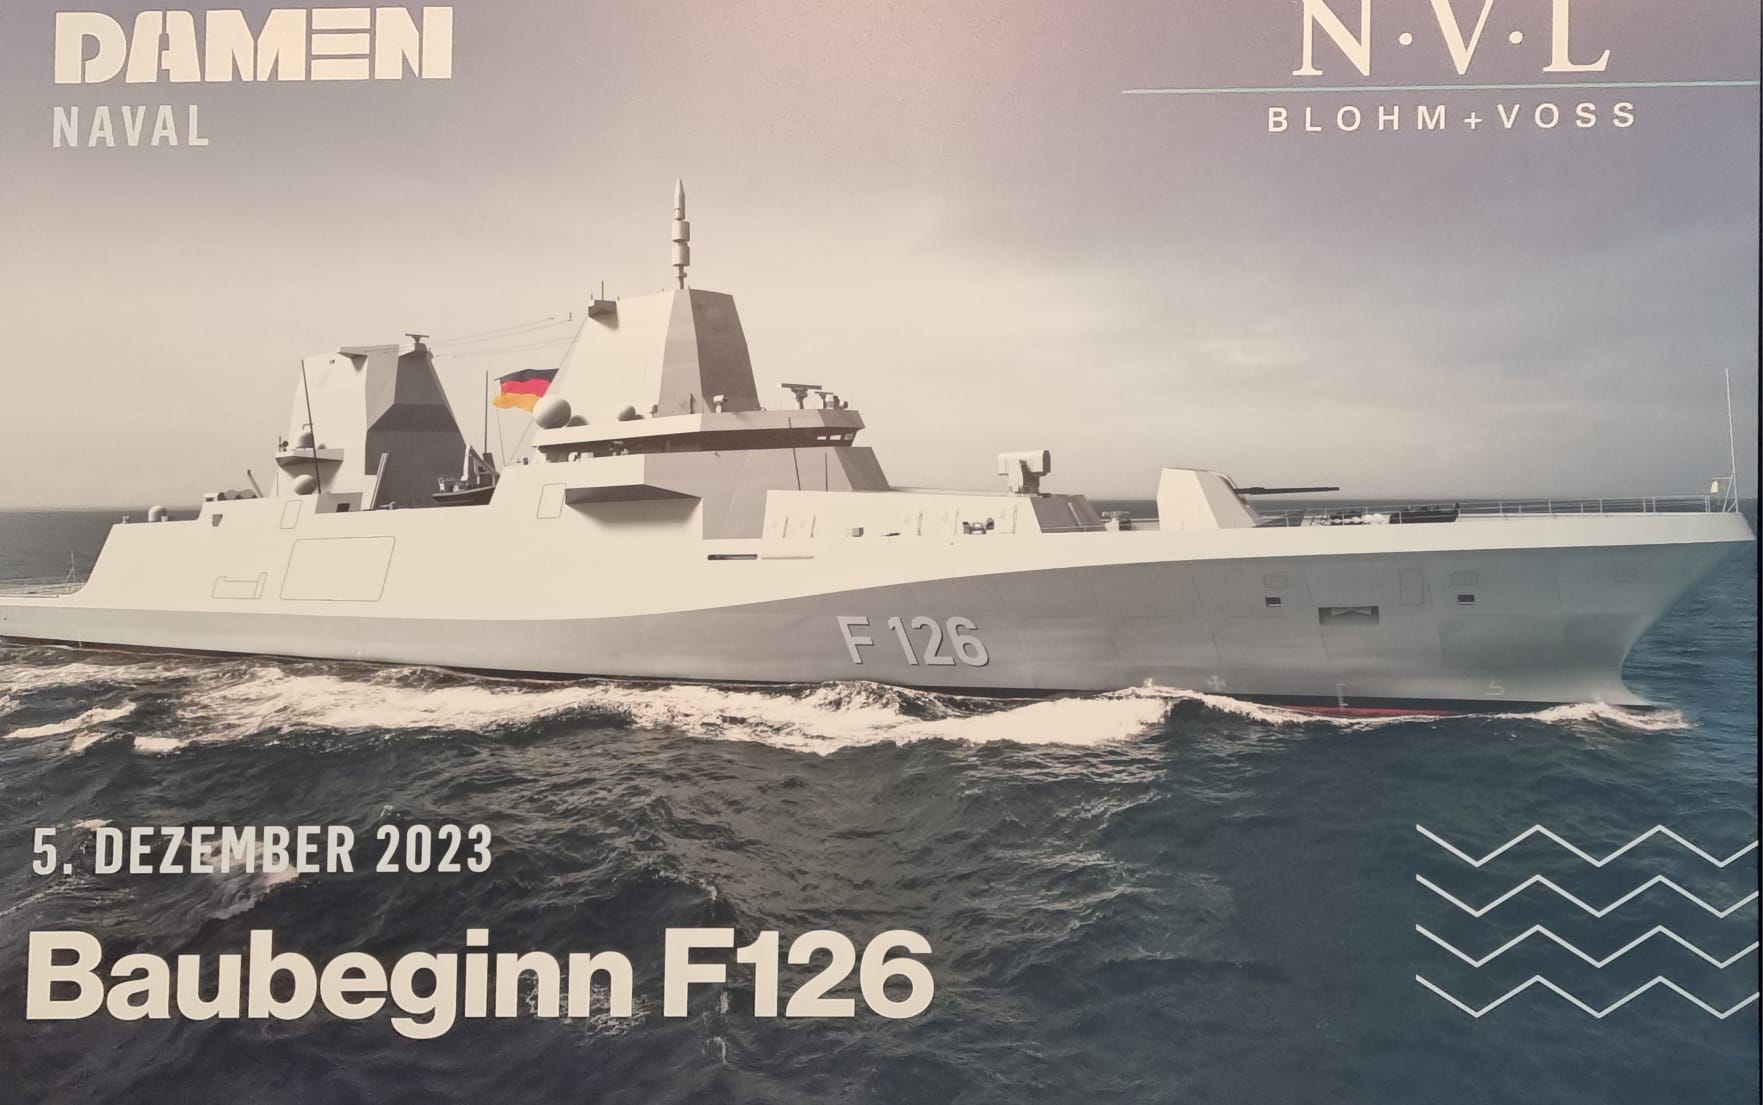 Mit dem Brennstart für die erste F126 begann gestern in Wolgast der Bau des aktuell größten Beschaffungsprojekts der Deutschen Marine.